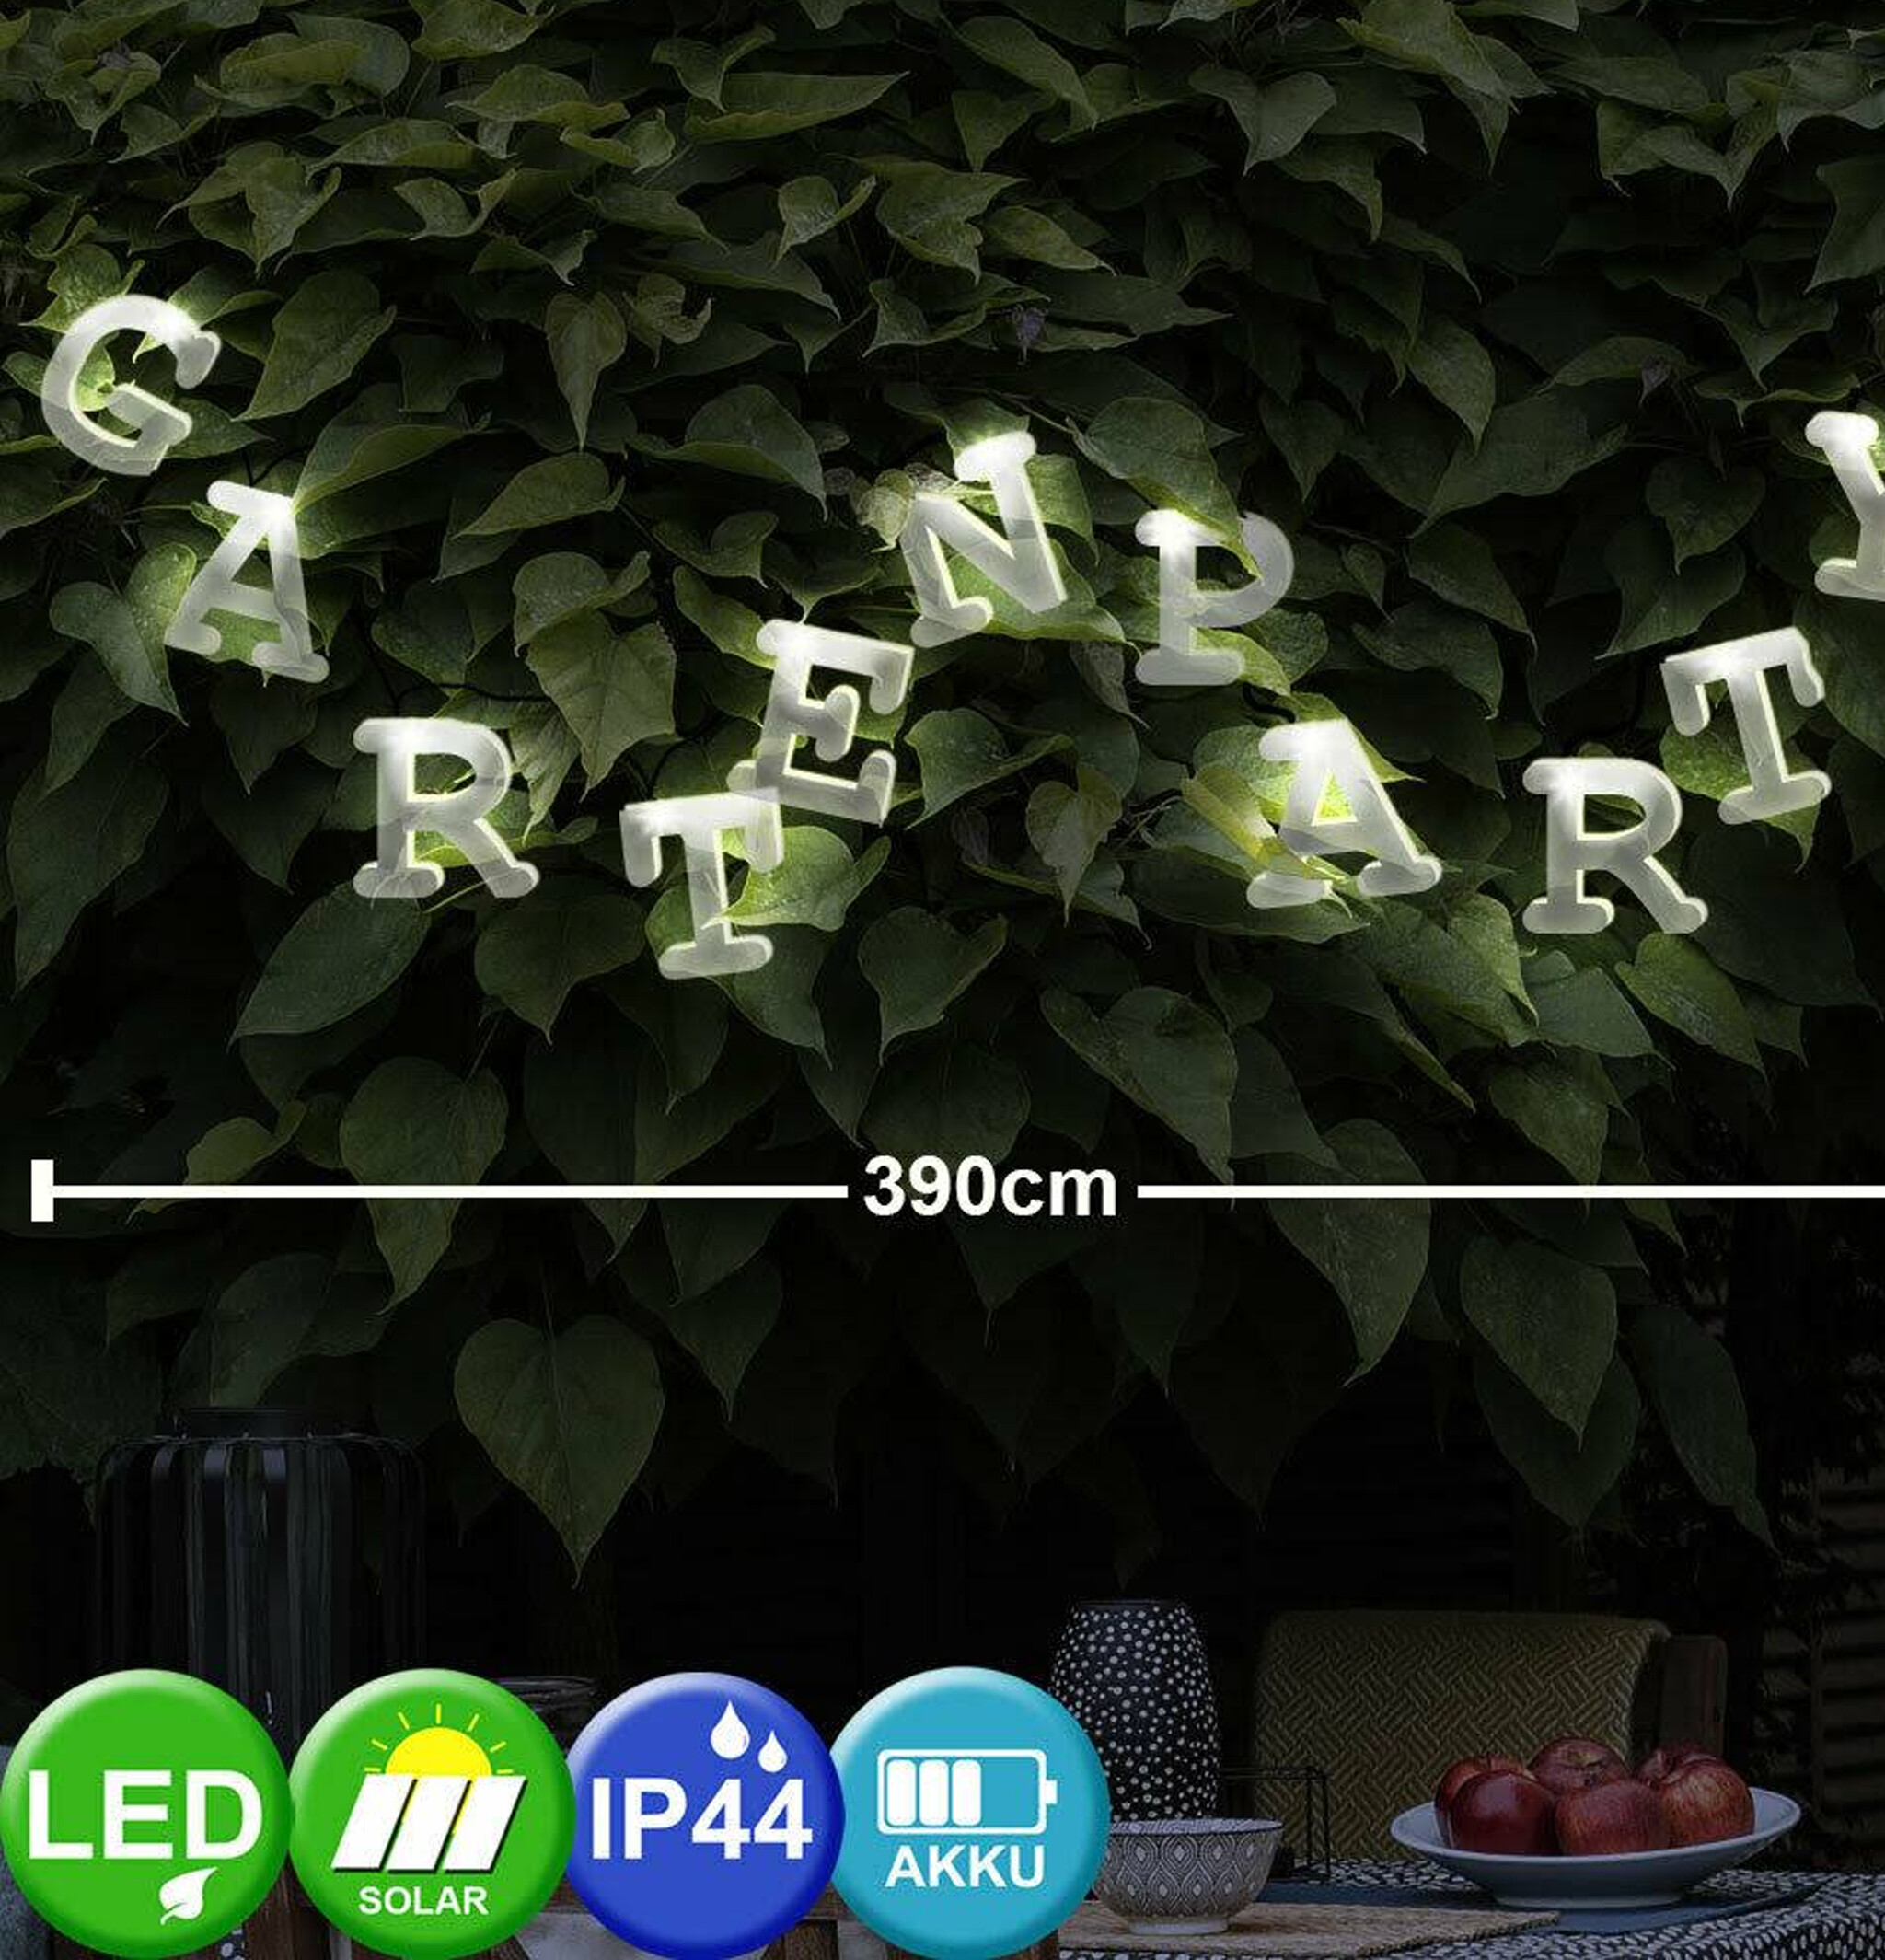 Solar-Lichterkette Buchstaben 20 LED, 55 Buchstaben